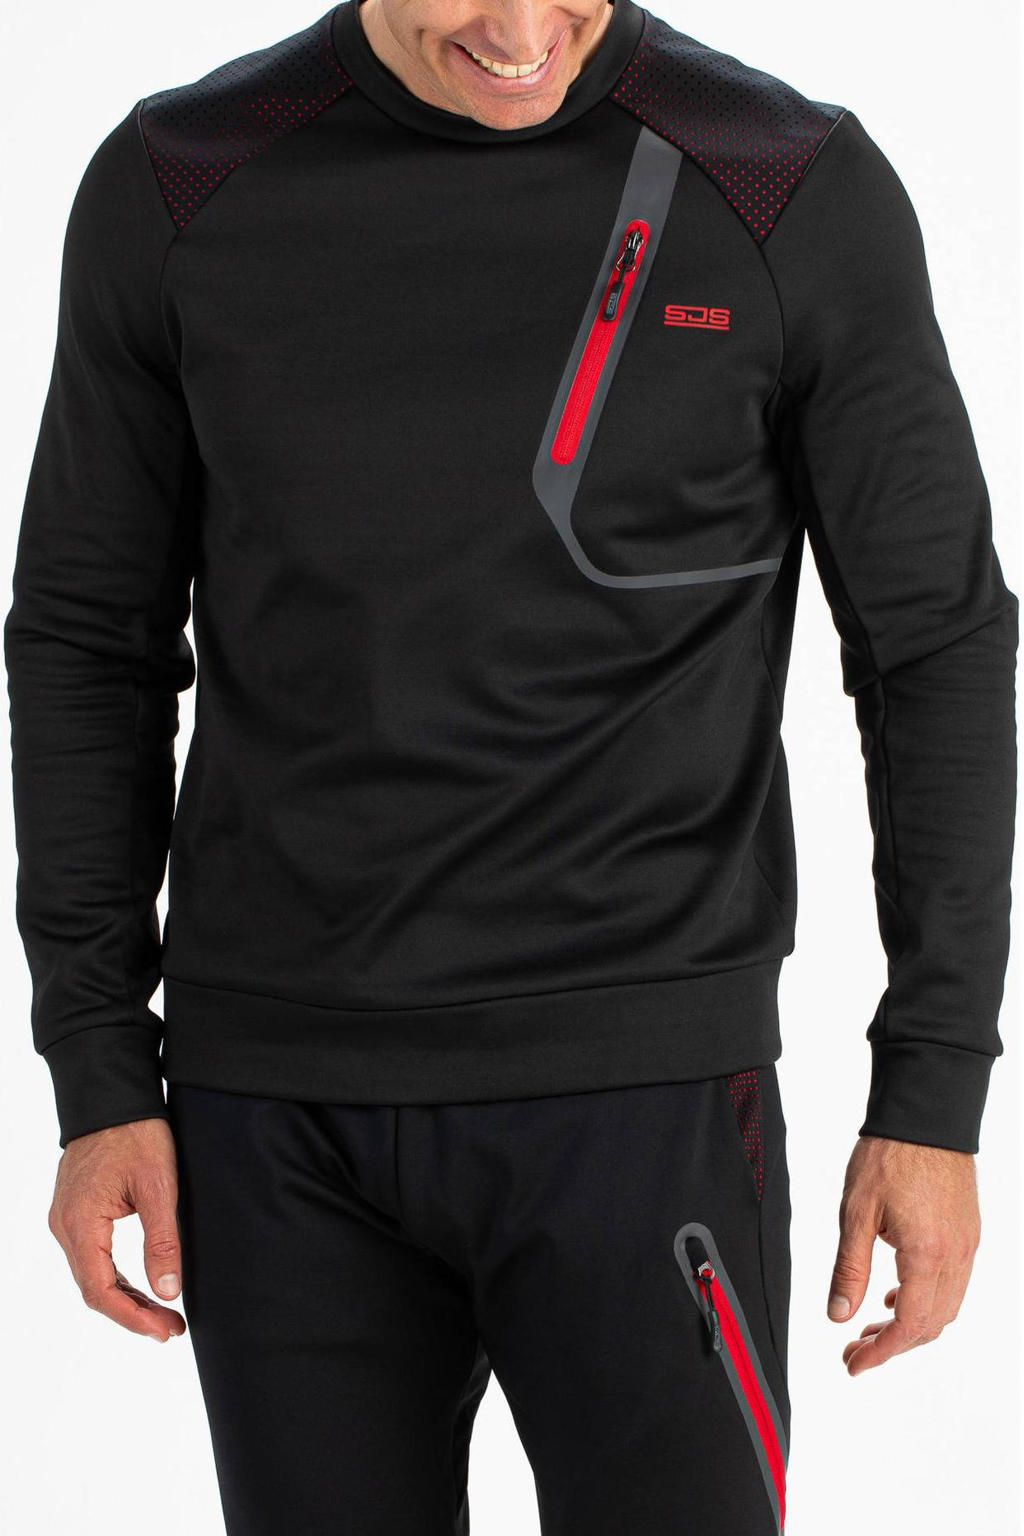 Zwart en rode heren Sjeng Sports sportsweater Vinnie van polyester met lange mouwen en ronde hals